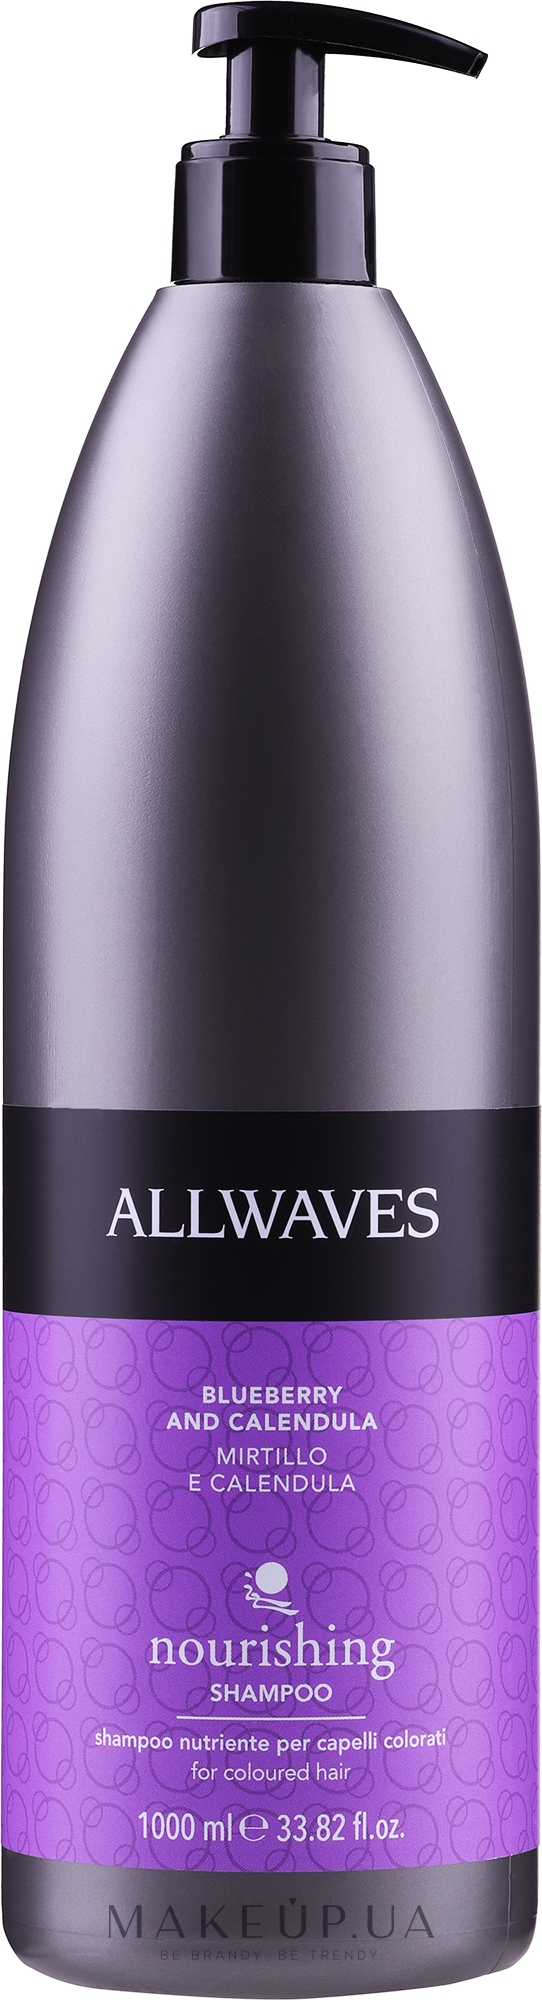 Живильний шампунь для фарбованого волосся - Allwaves Nourishing Shampoo — фото 1000ml